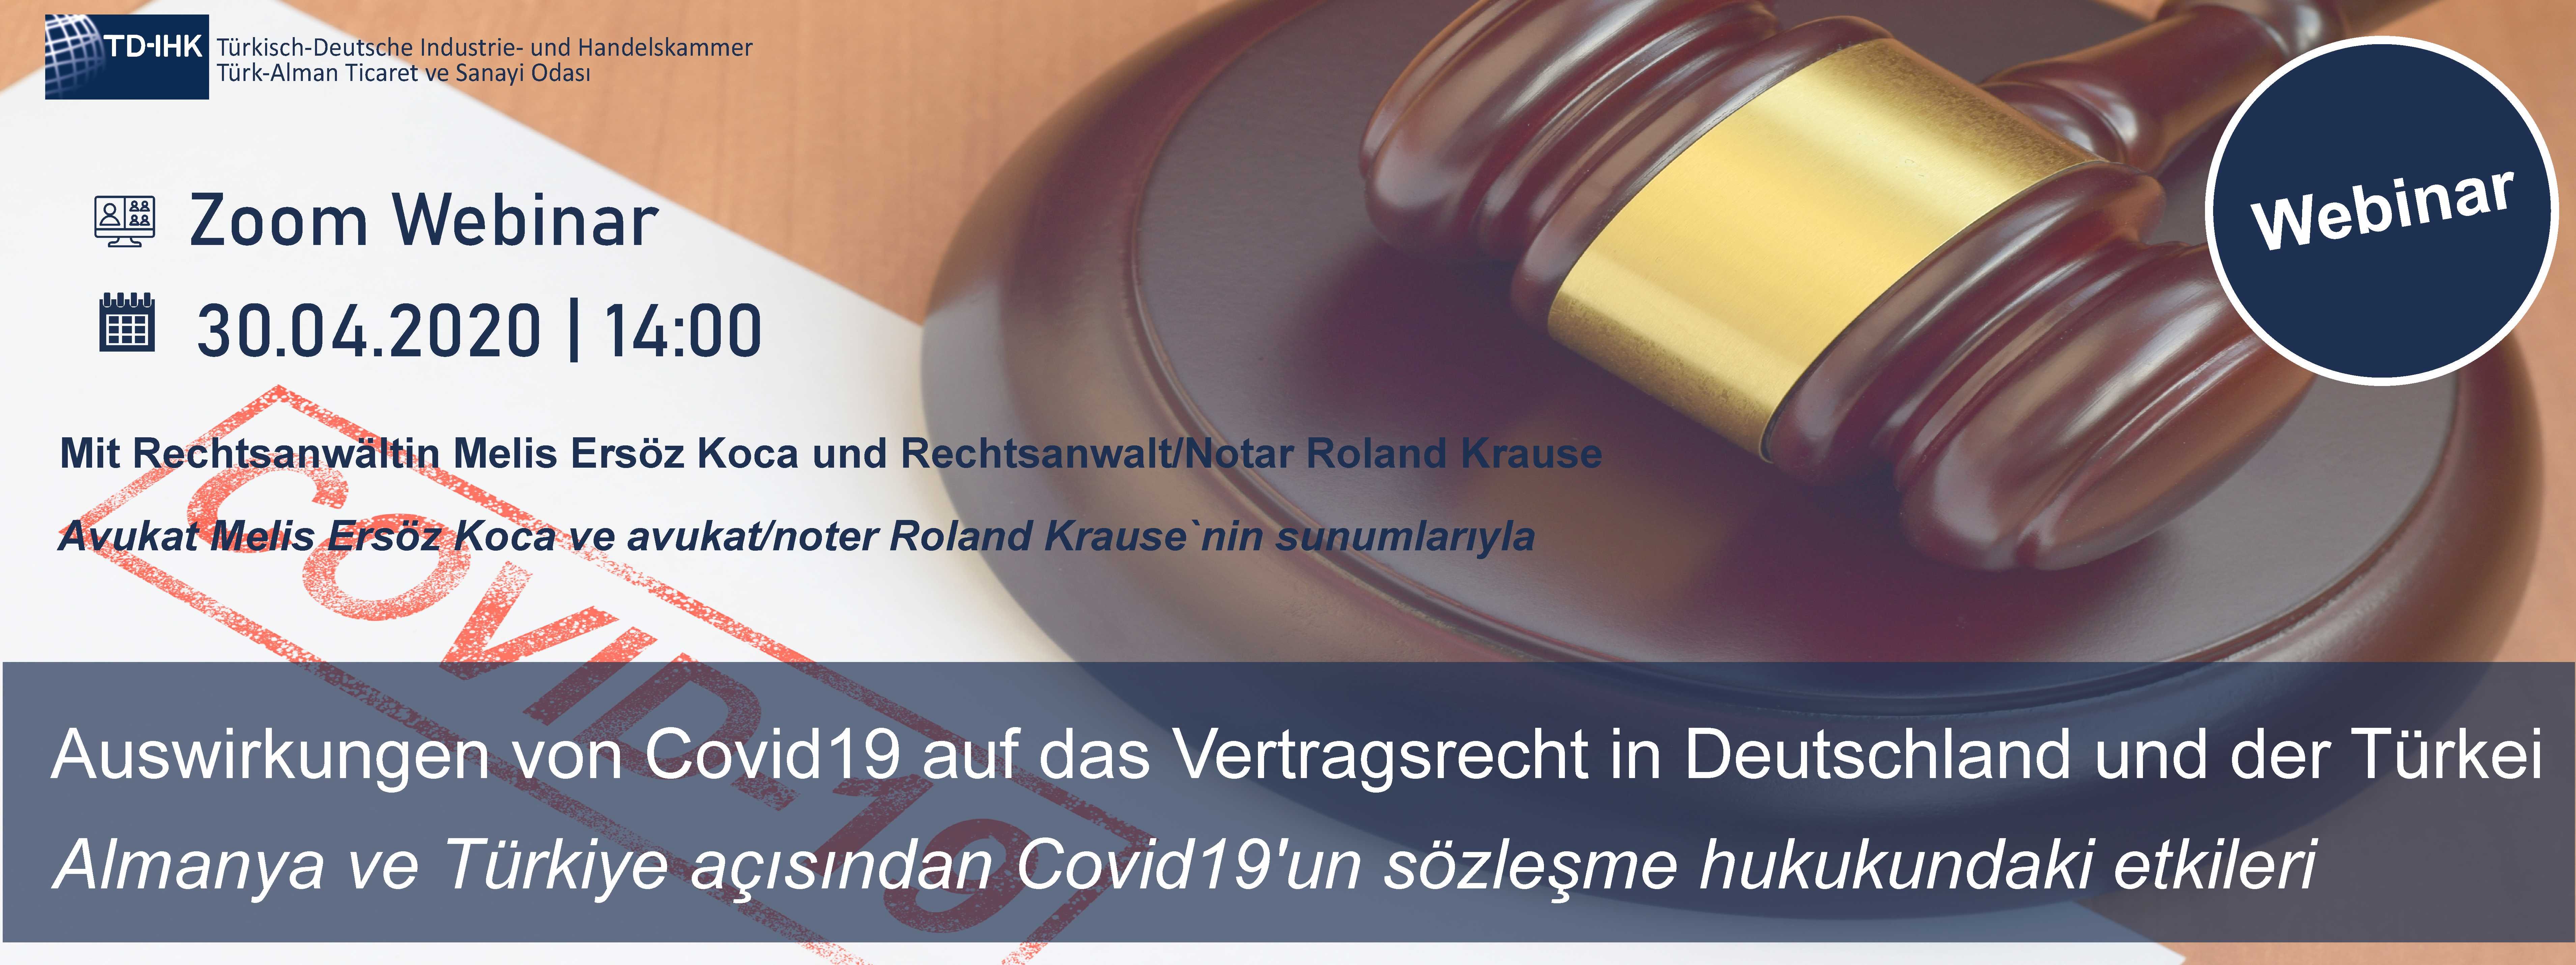 TD-IHK Online Seminar: Auswirkungen von Covid19 auf das Vertragsrecht in Deutschland und der Türkei